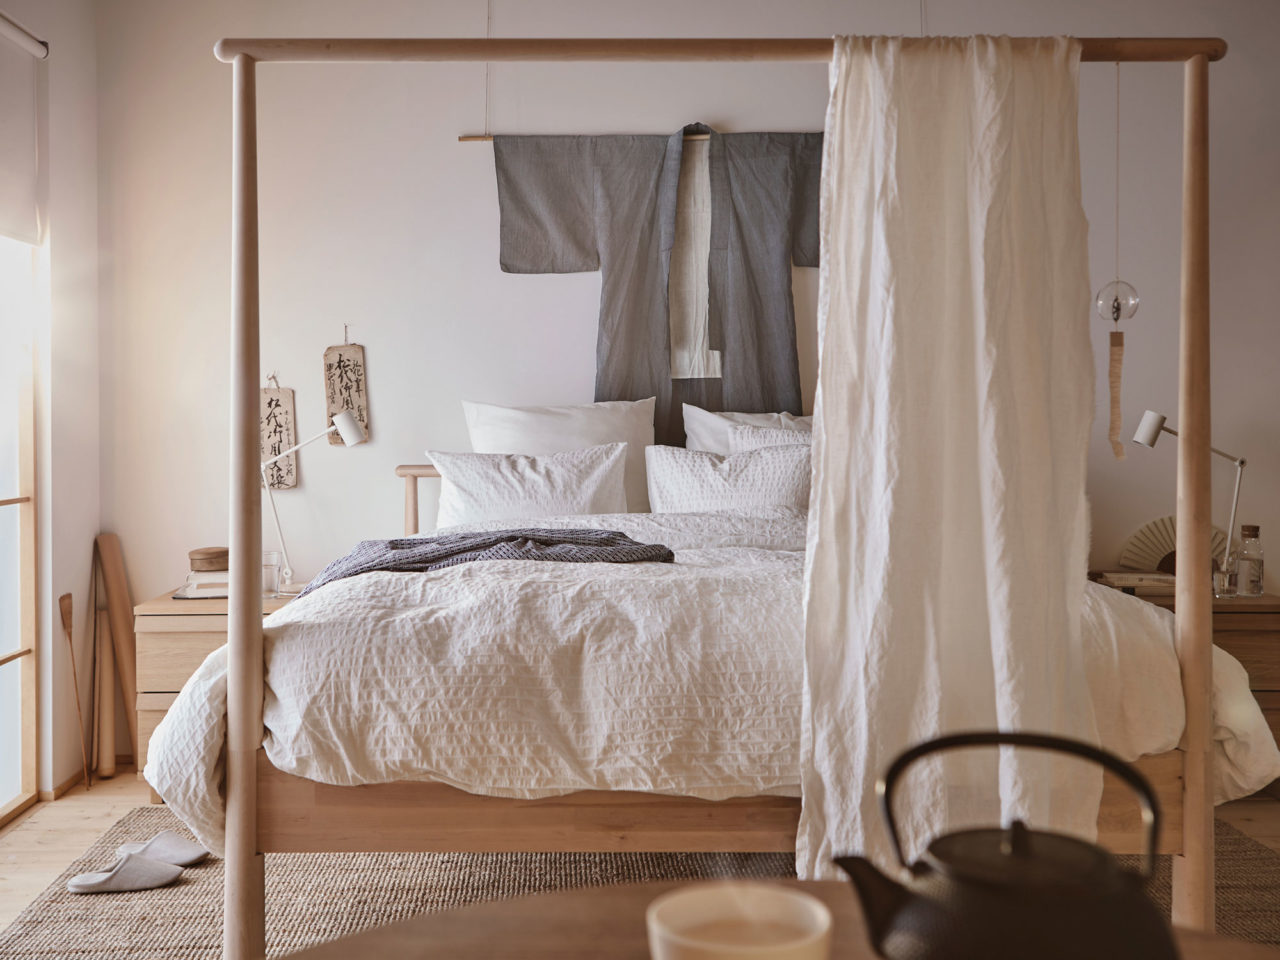 Pièce claire avec un lit double en bois clair. Le pied présente un grand cadre sur lequel est drapé un rideau.